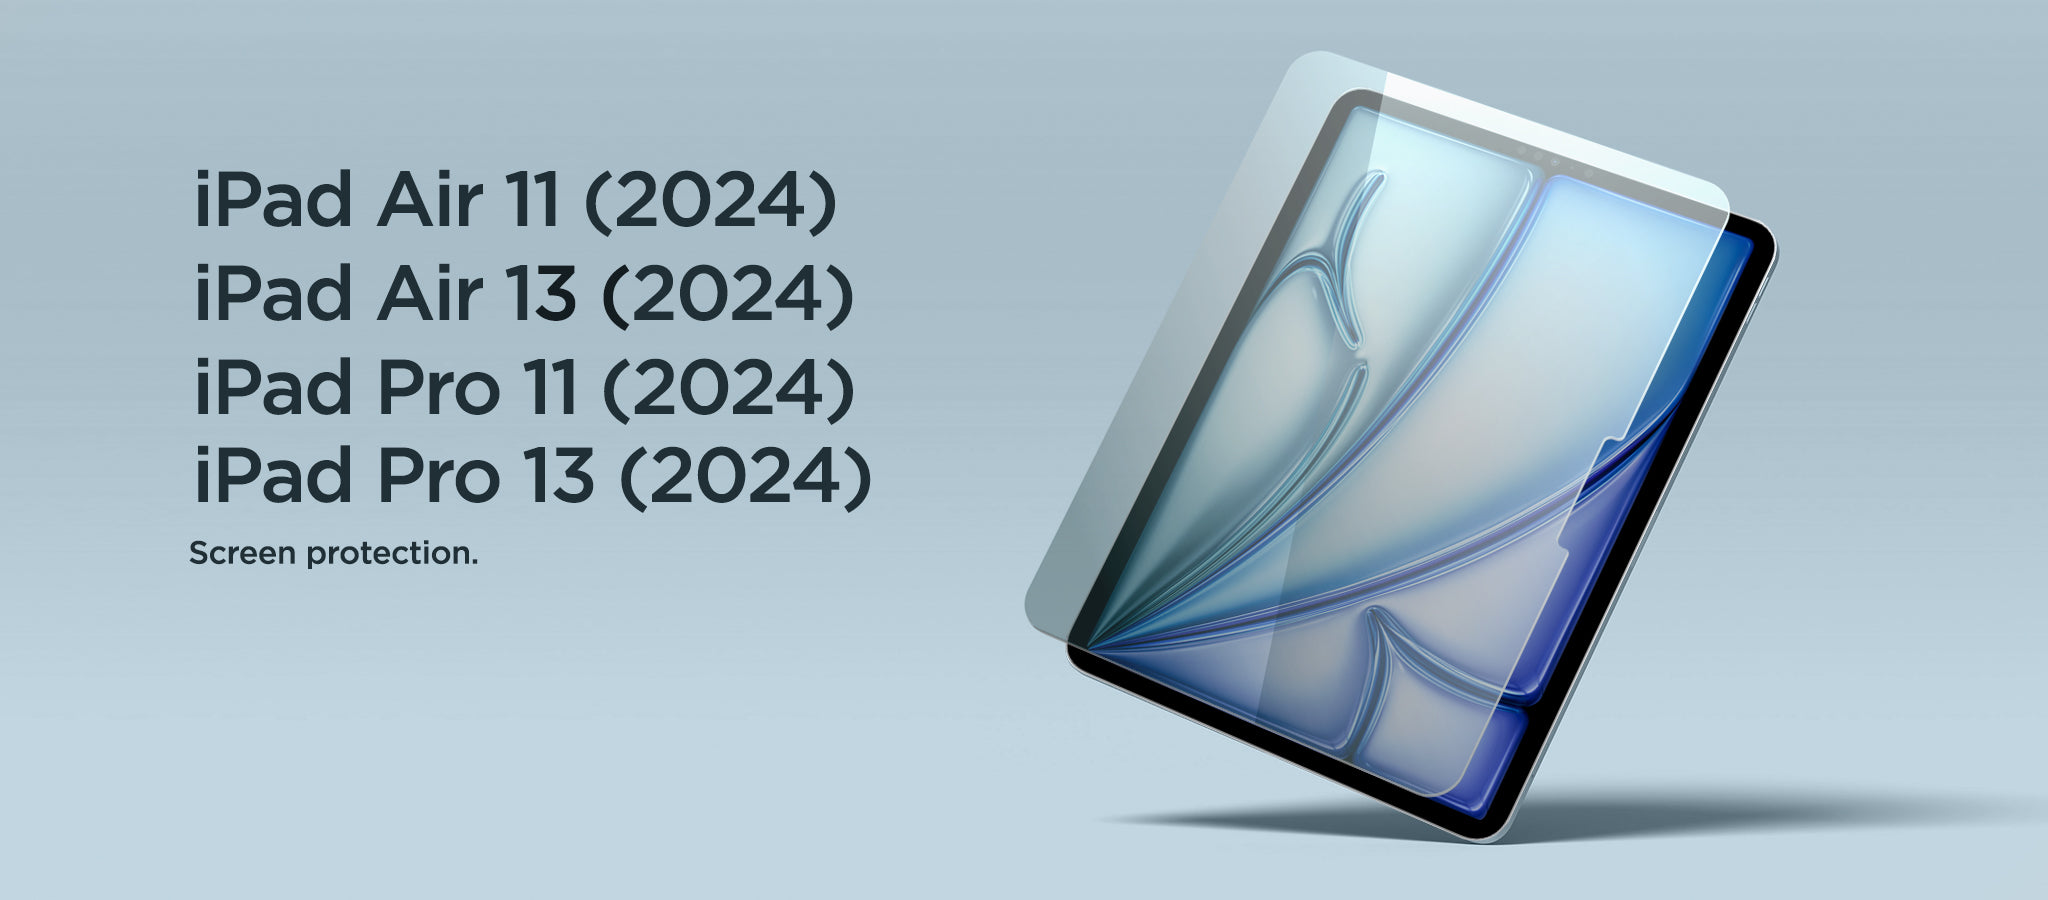 E137-Eiger-iPads-2024-Launch-Banner_426ede89-bc16-407c-ab29-b98c8afd348e.jpg